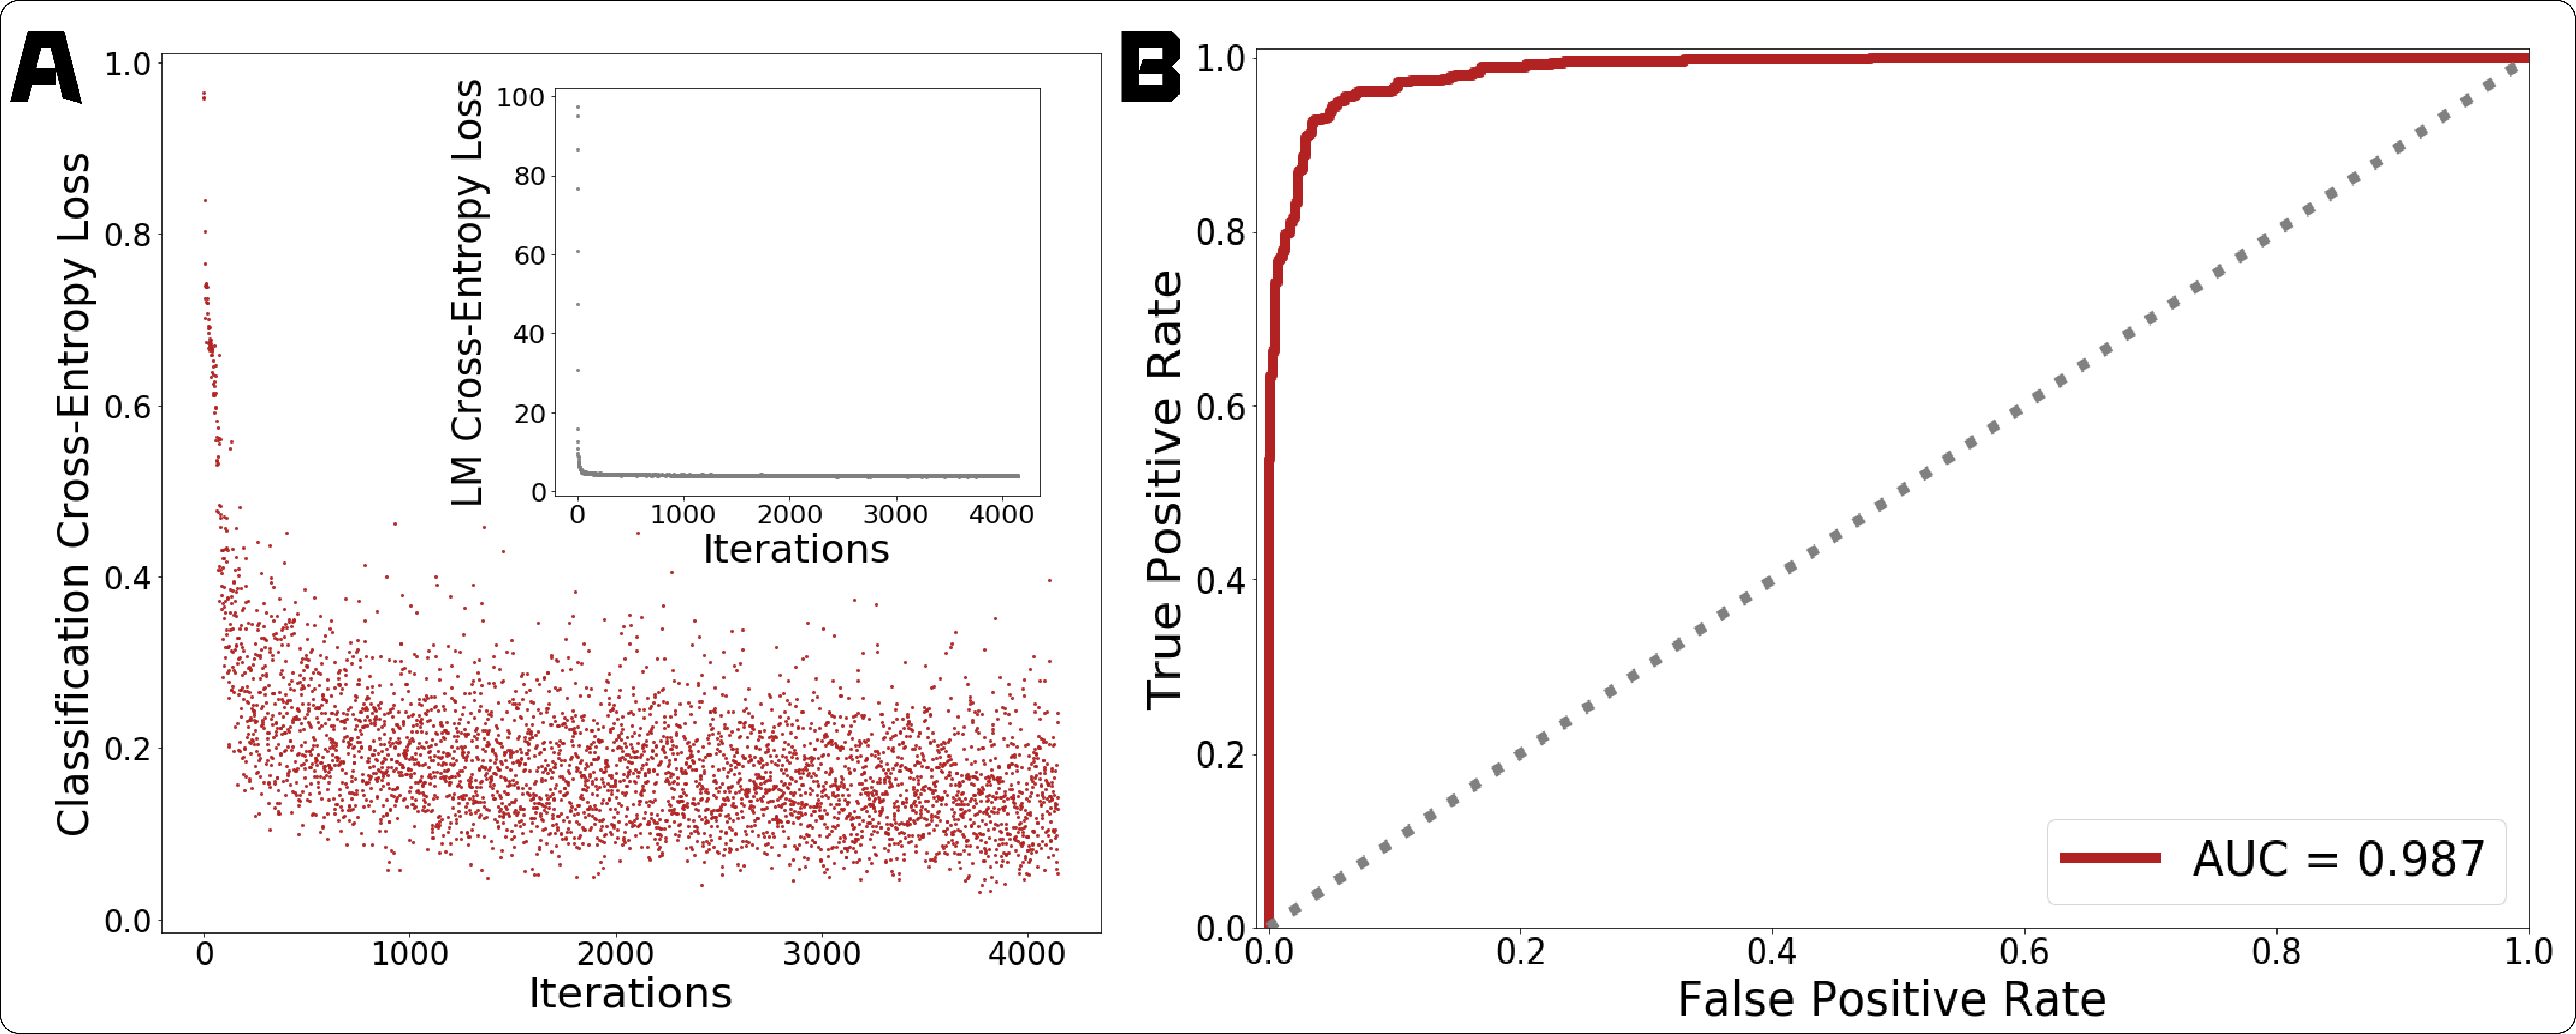 (A) 分類 (赤) および LM (灰色、挿入図) タスクの GPT-2 微調整中の損失履歴のトレーニング。 (B) ROC 曲線 (赤) は、ホールドアウトされた微調整テスト セットで評価され、ランダムな推測 (灰色の点線) とは対照的です。